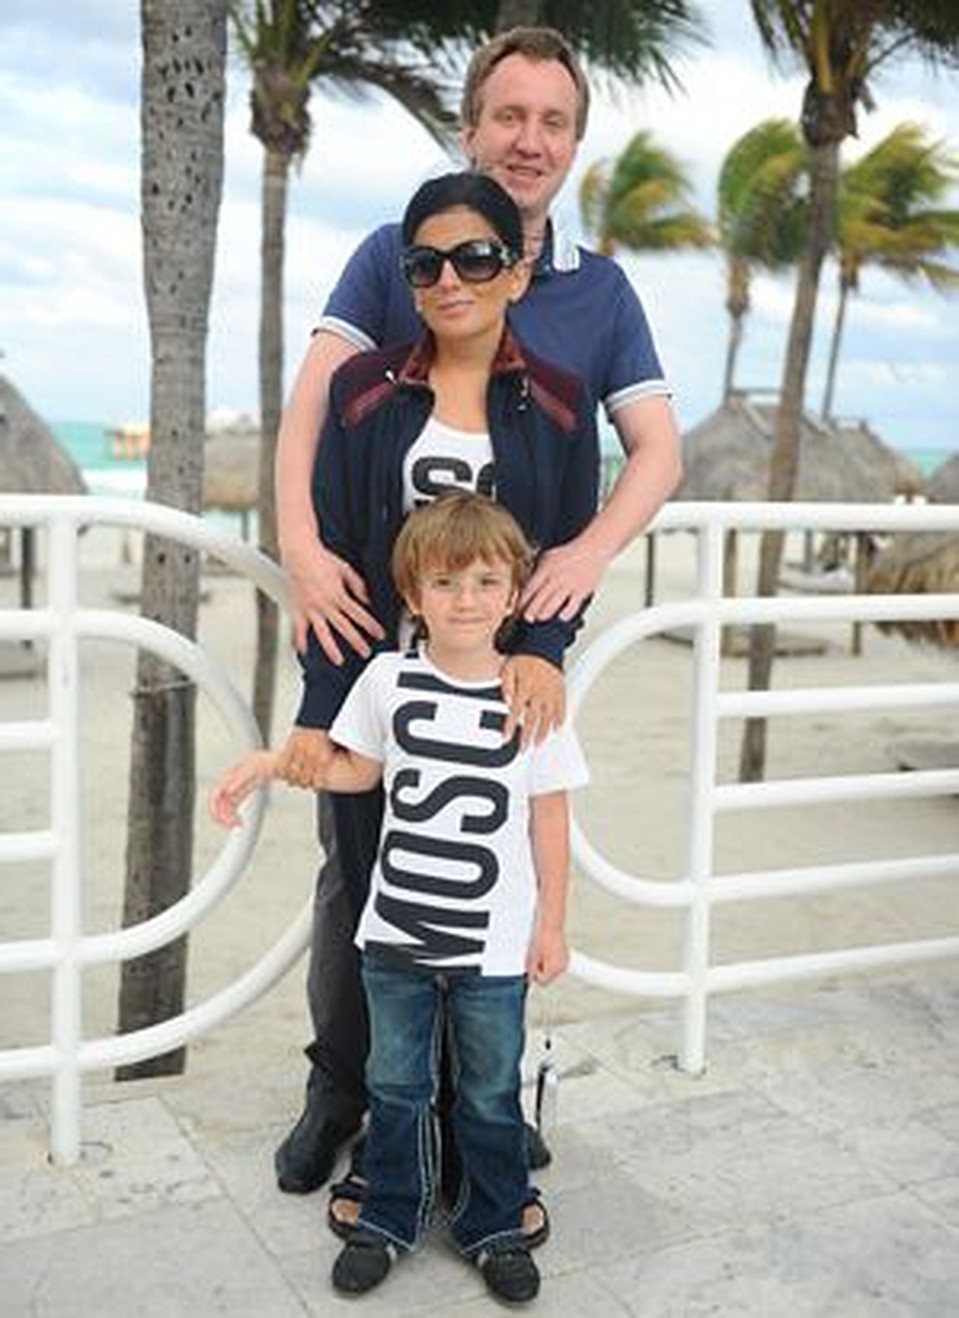 Диана Гурцкая отдыхала в Майами вместе с мужем и сыном. Но собственностью здесь пока не обзавелась, ждет еще большего падения цен. 